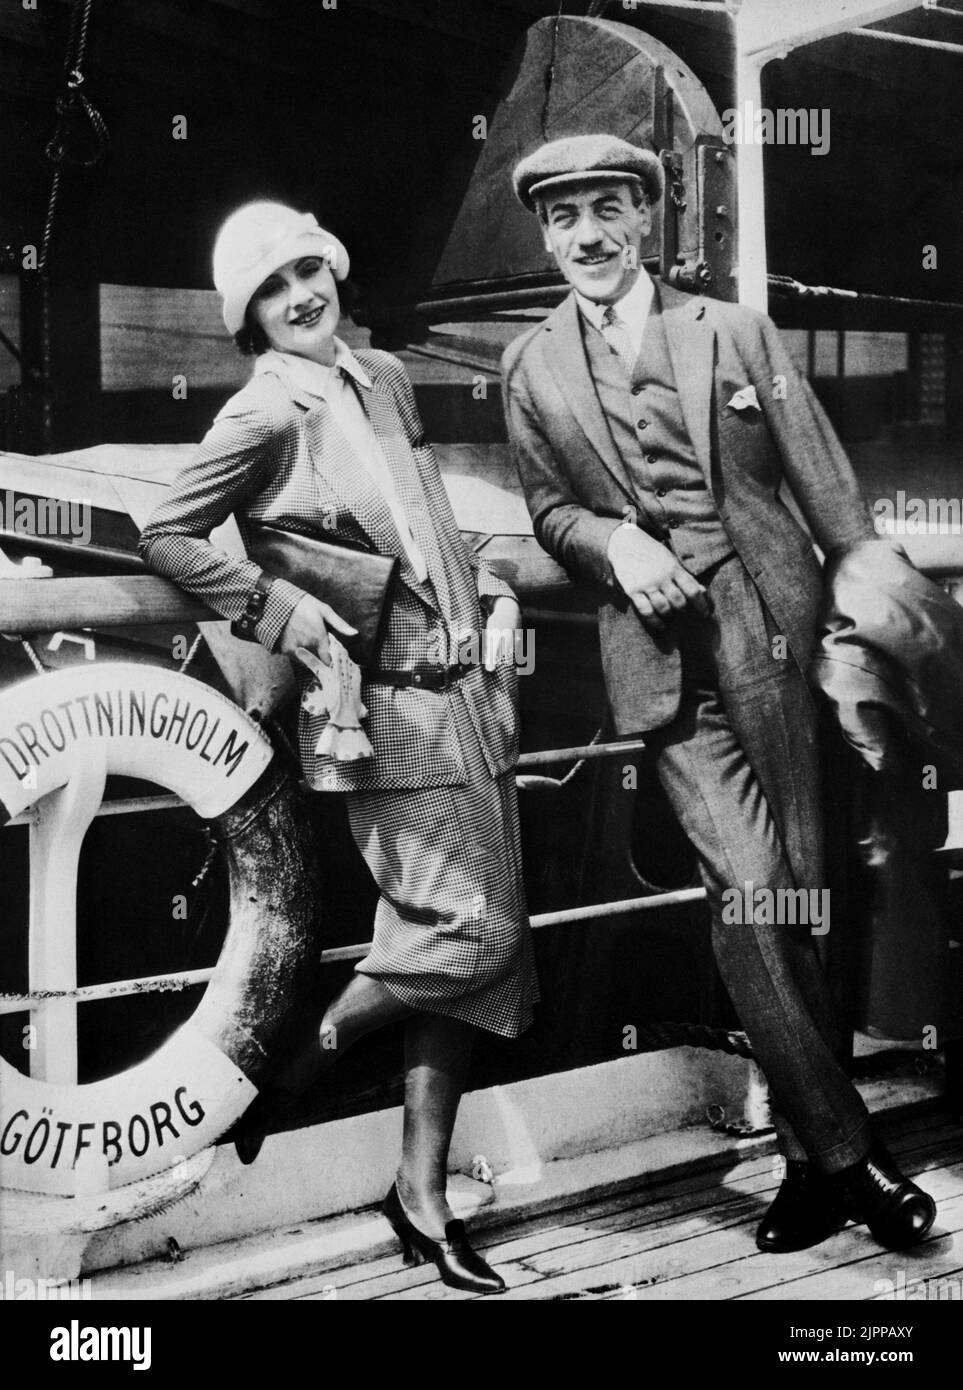 1925 , juillet , New York : L'actrice GRETA GARBO ( 1905 - 1990 ) avec le célèbre réalisateur suédois MAURITZ STILLER est arrivée aux Etats-Unis le comité de réception sur la jetée était composé d'un seul photographe de lance gratuit qui avait été payé à l'avance par Metro Goldwyn Mayer pour prendre quelques photos publicitaires . Ils ont attendu trois mois à New York avec des fonds plutôt limités avant d'avoir le mot de Hollywood pour prendre un train pour la Californie - FILM - CINÉMA - portrait - ritratto - sourire - sorriso - chapeau - cappello - cloche - scarpe - chaussures - nef - bateau - emigráte - immigráta - Banque D'Images